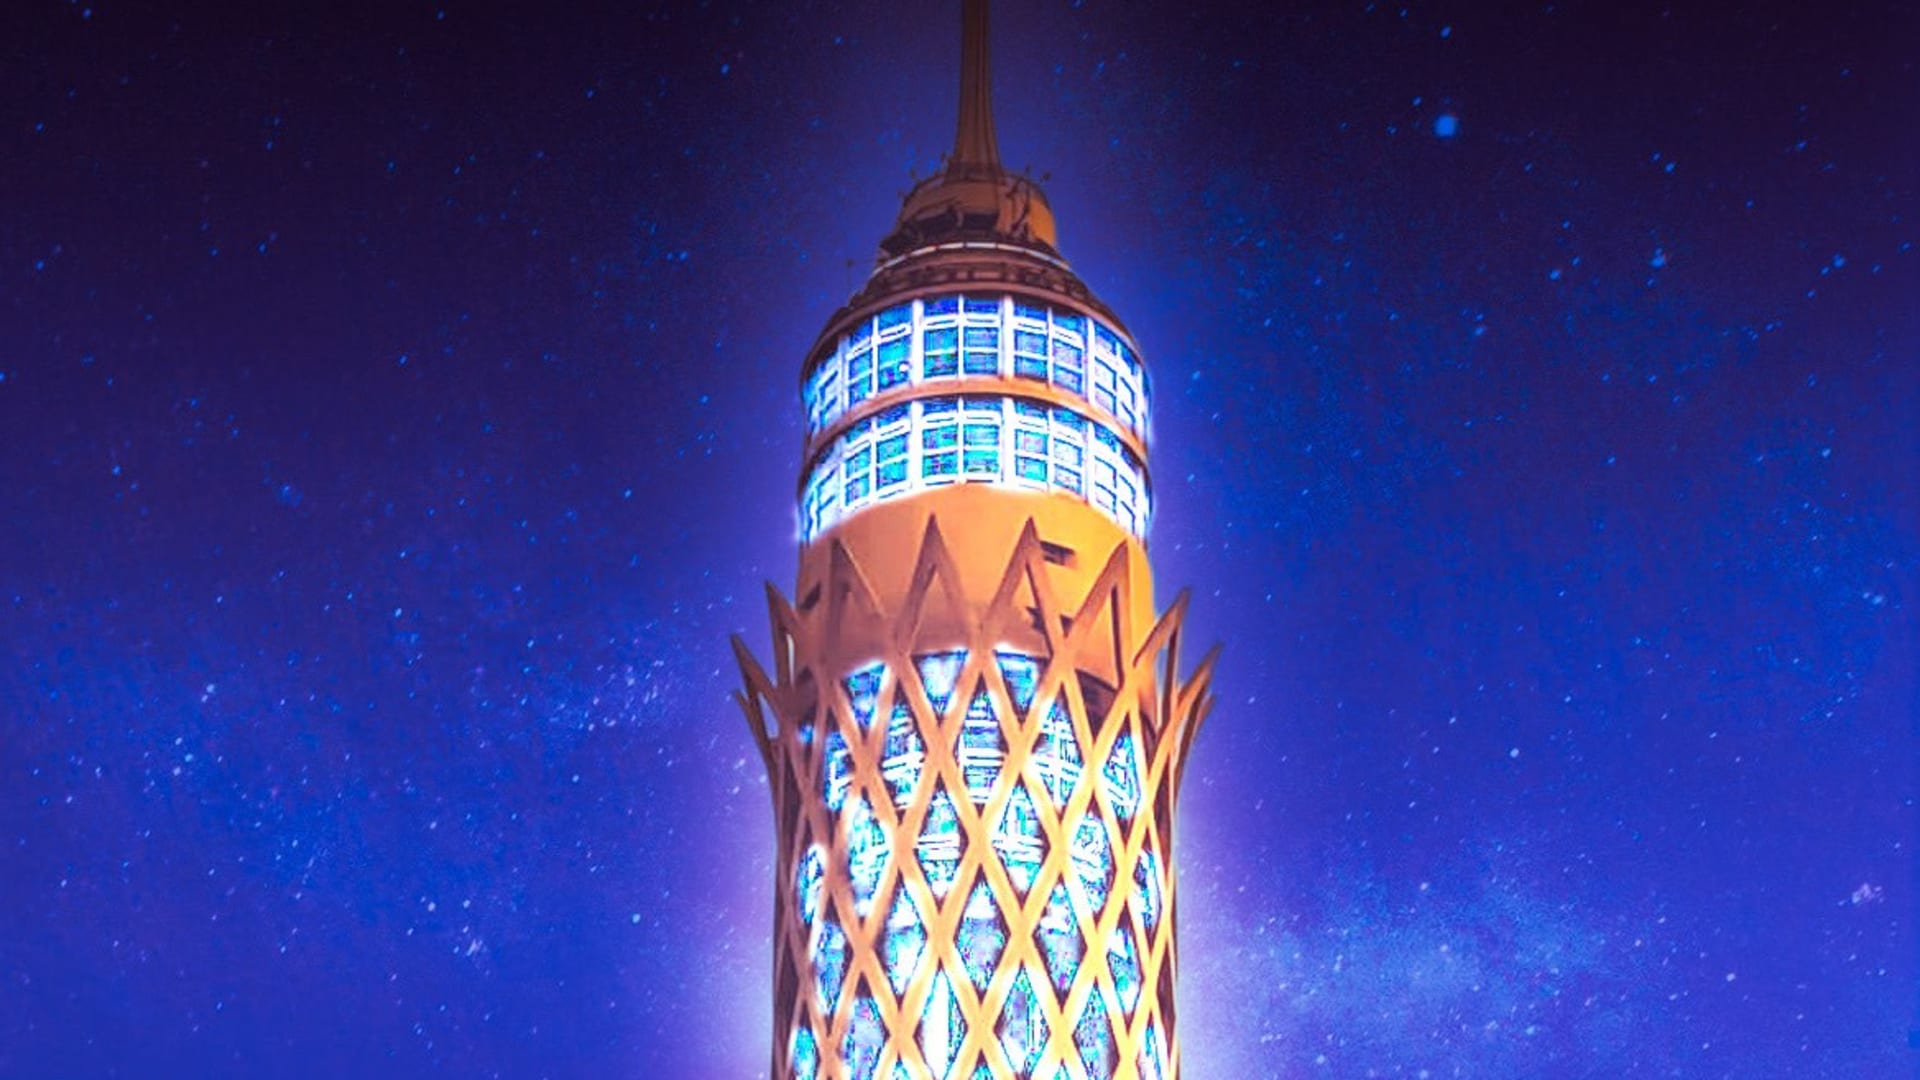 برج القاهرة يسطع بحلة جديدة ليظهر أشبه بلوحة فنية..حقيقة أم خيال؟